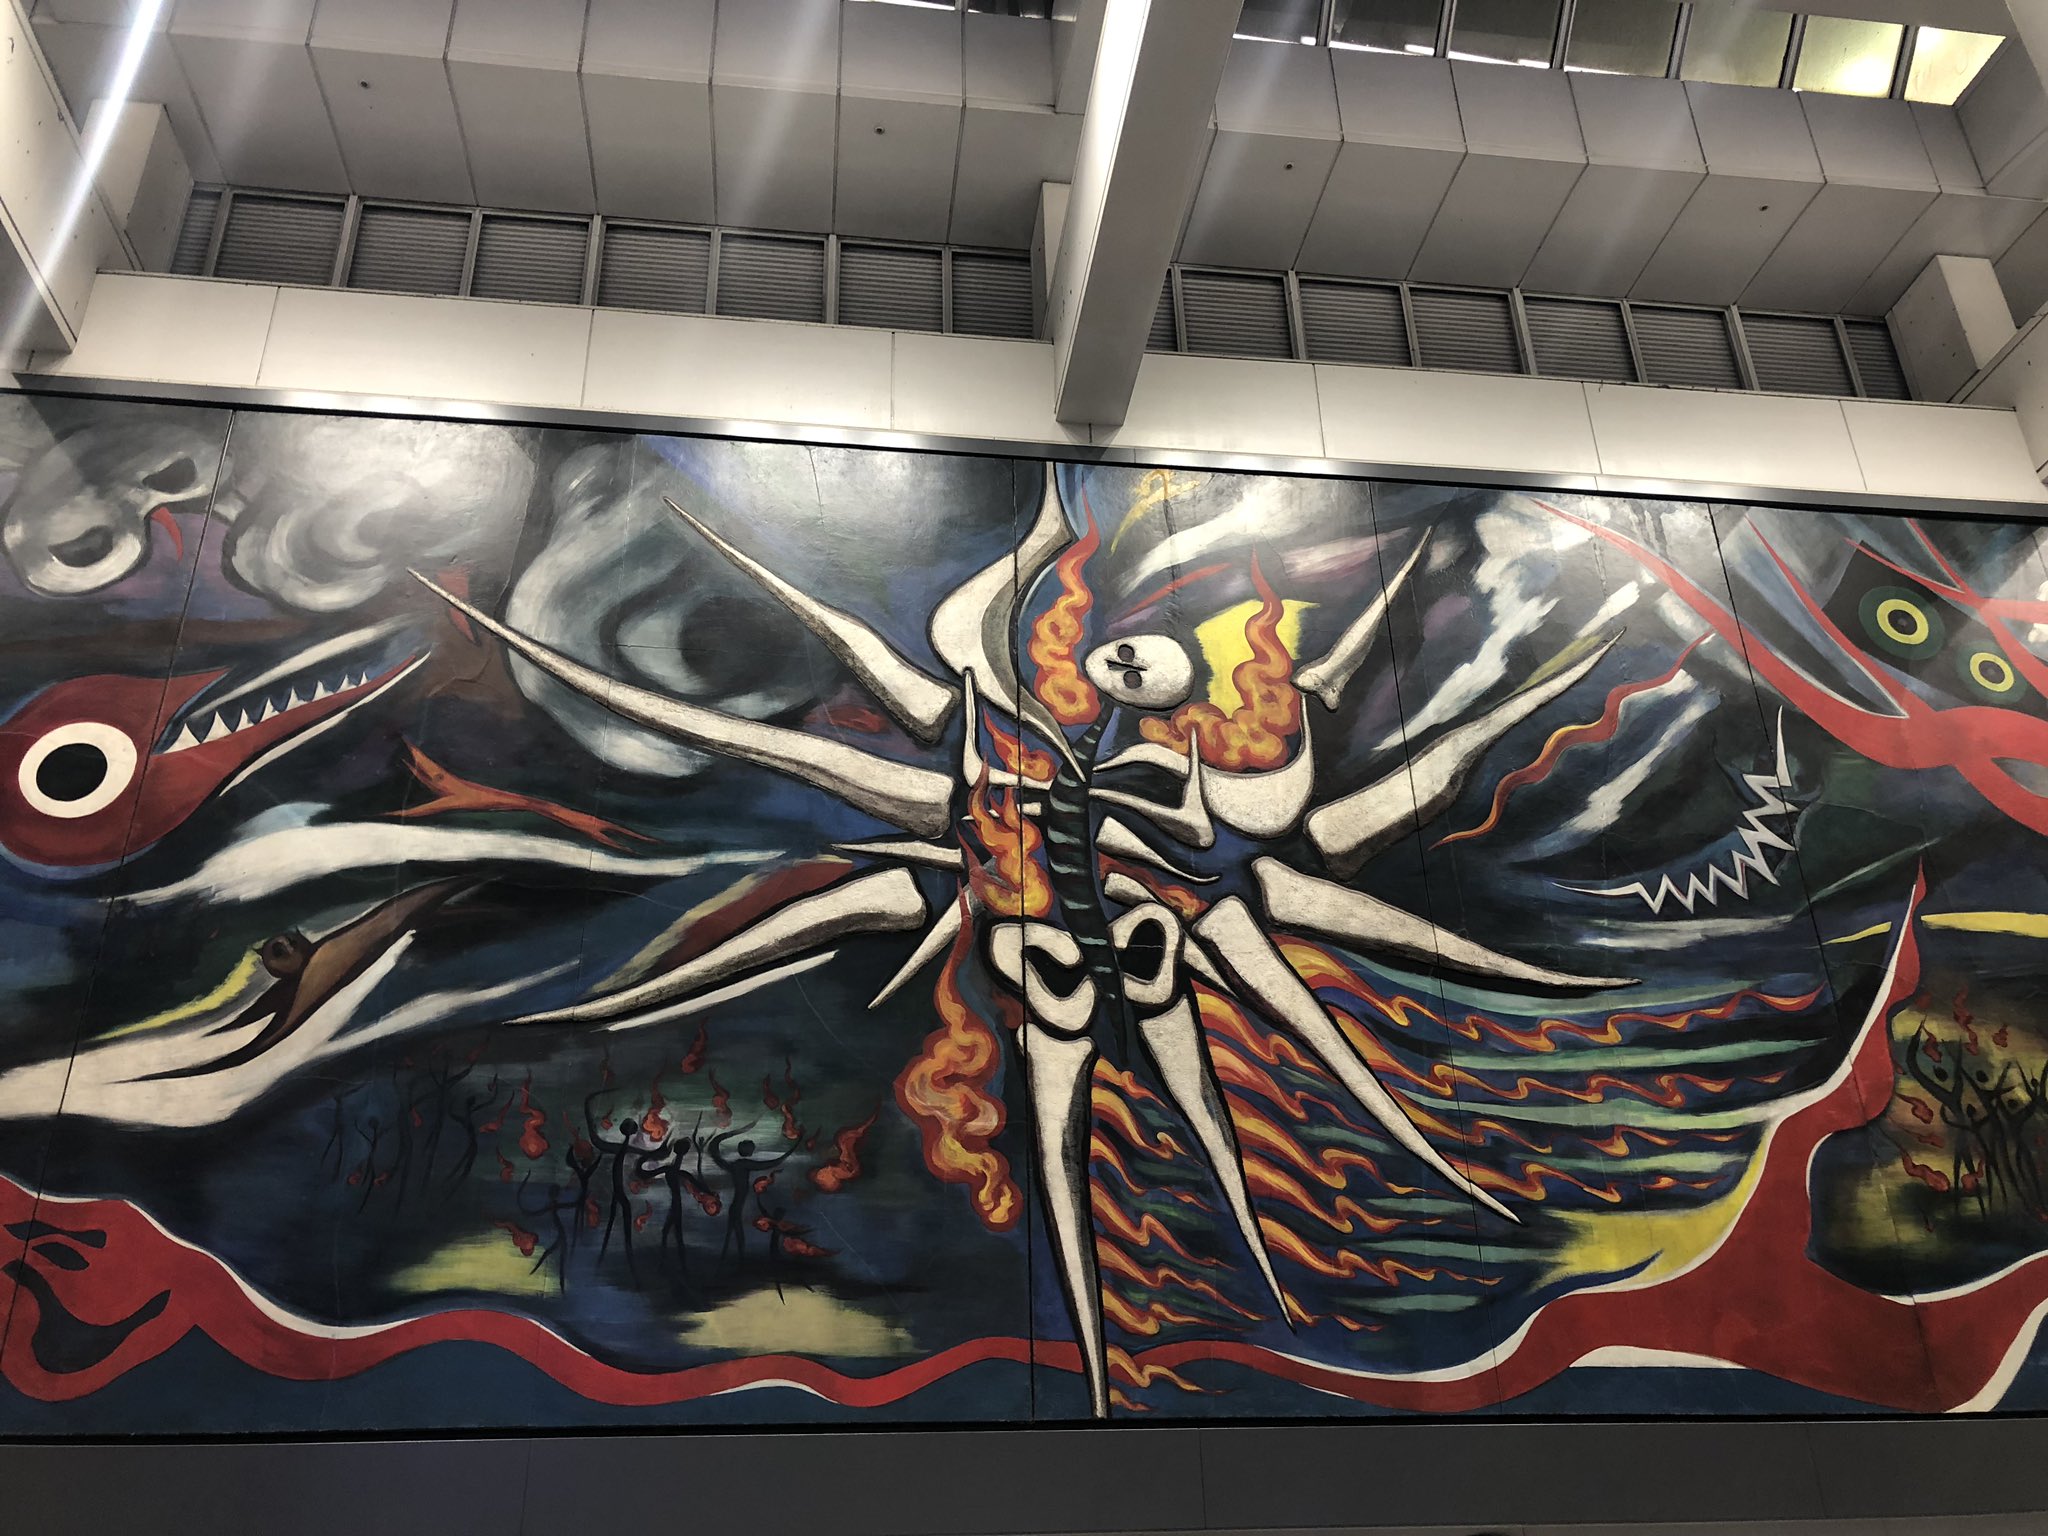 ジュリー ところで昨日観た渋谷駅の壁画の岡本太郎の絵が今さらながらスゴイ迫力だったので見て 戦争 死の天使 最後の審判を連想してしまった私 T Co Dqlfuw9zg9 Twitter